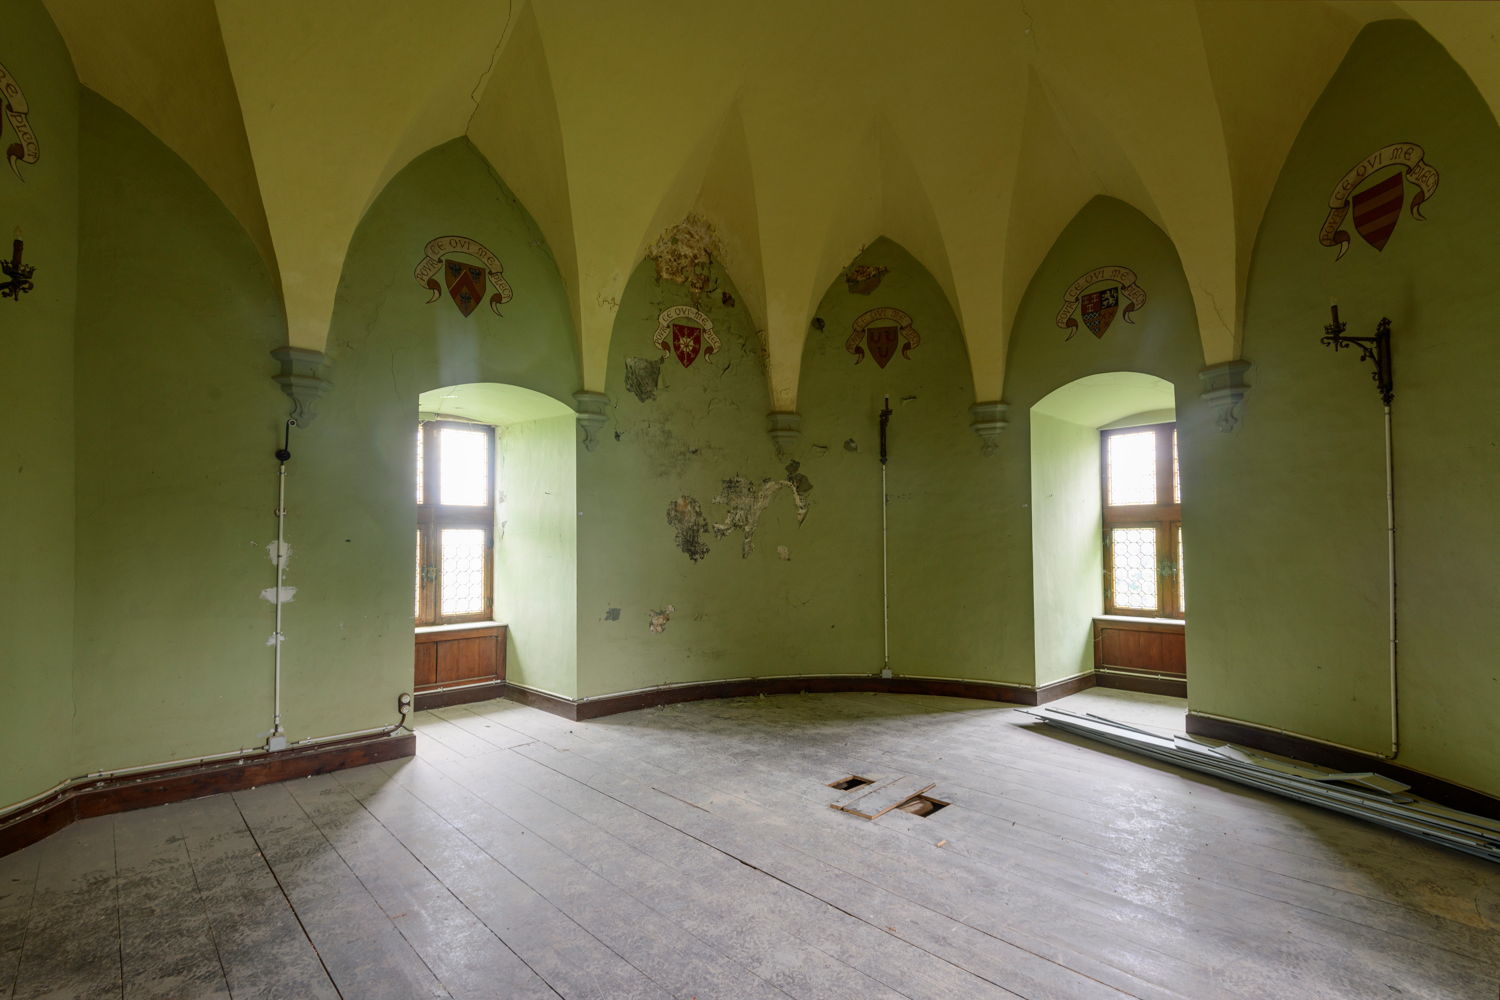 Kamer van Carletto voor restauratie, © Jo Exelmans, mei 2021